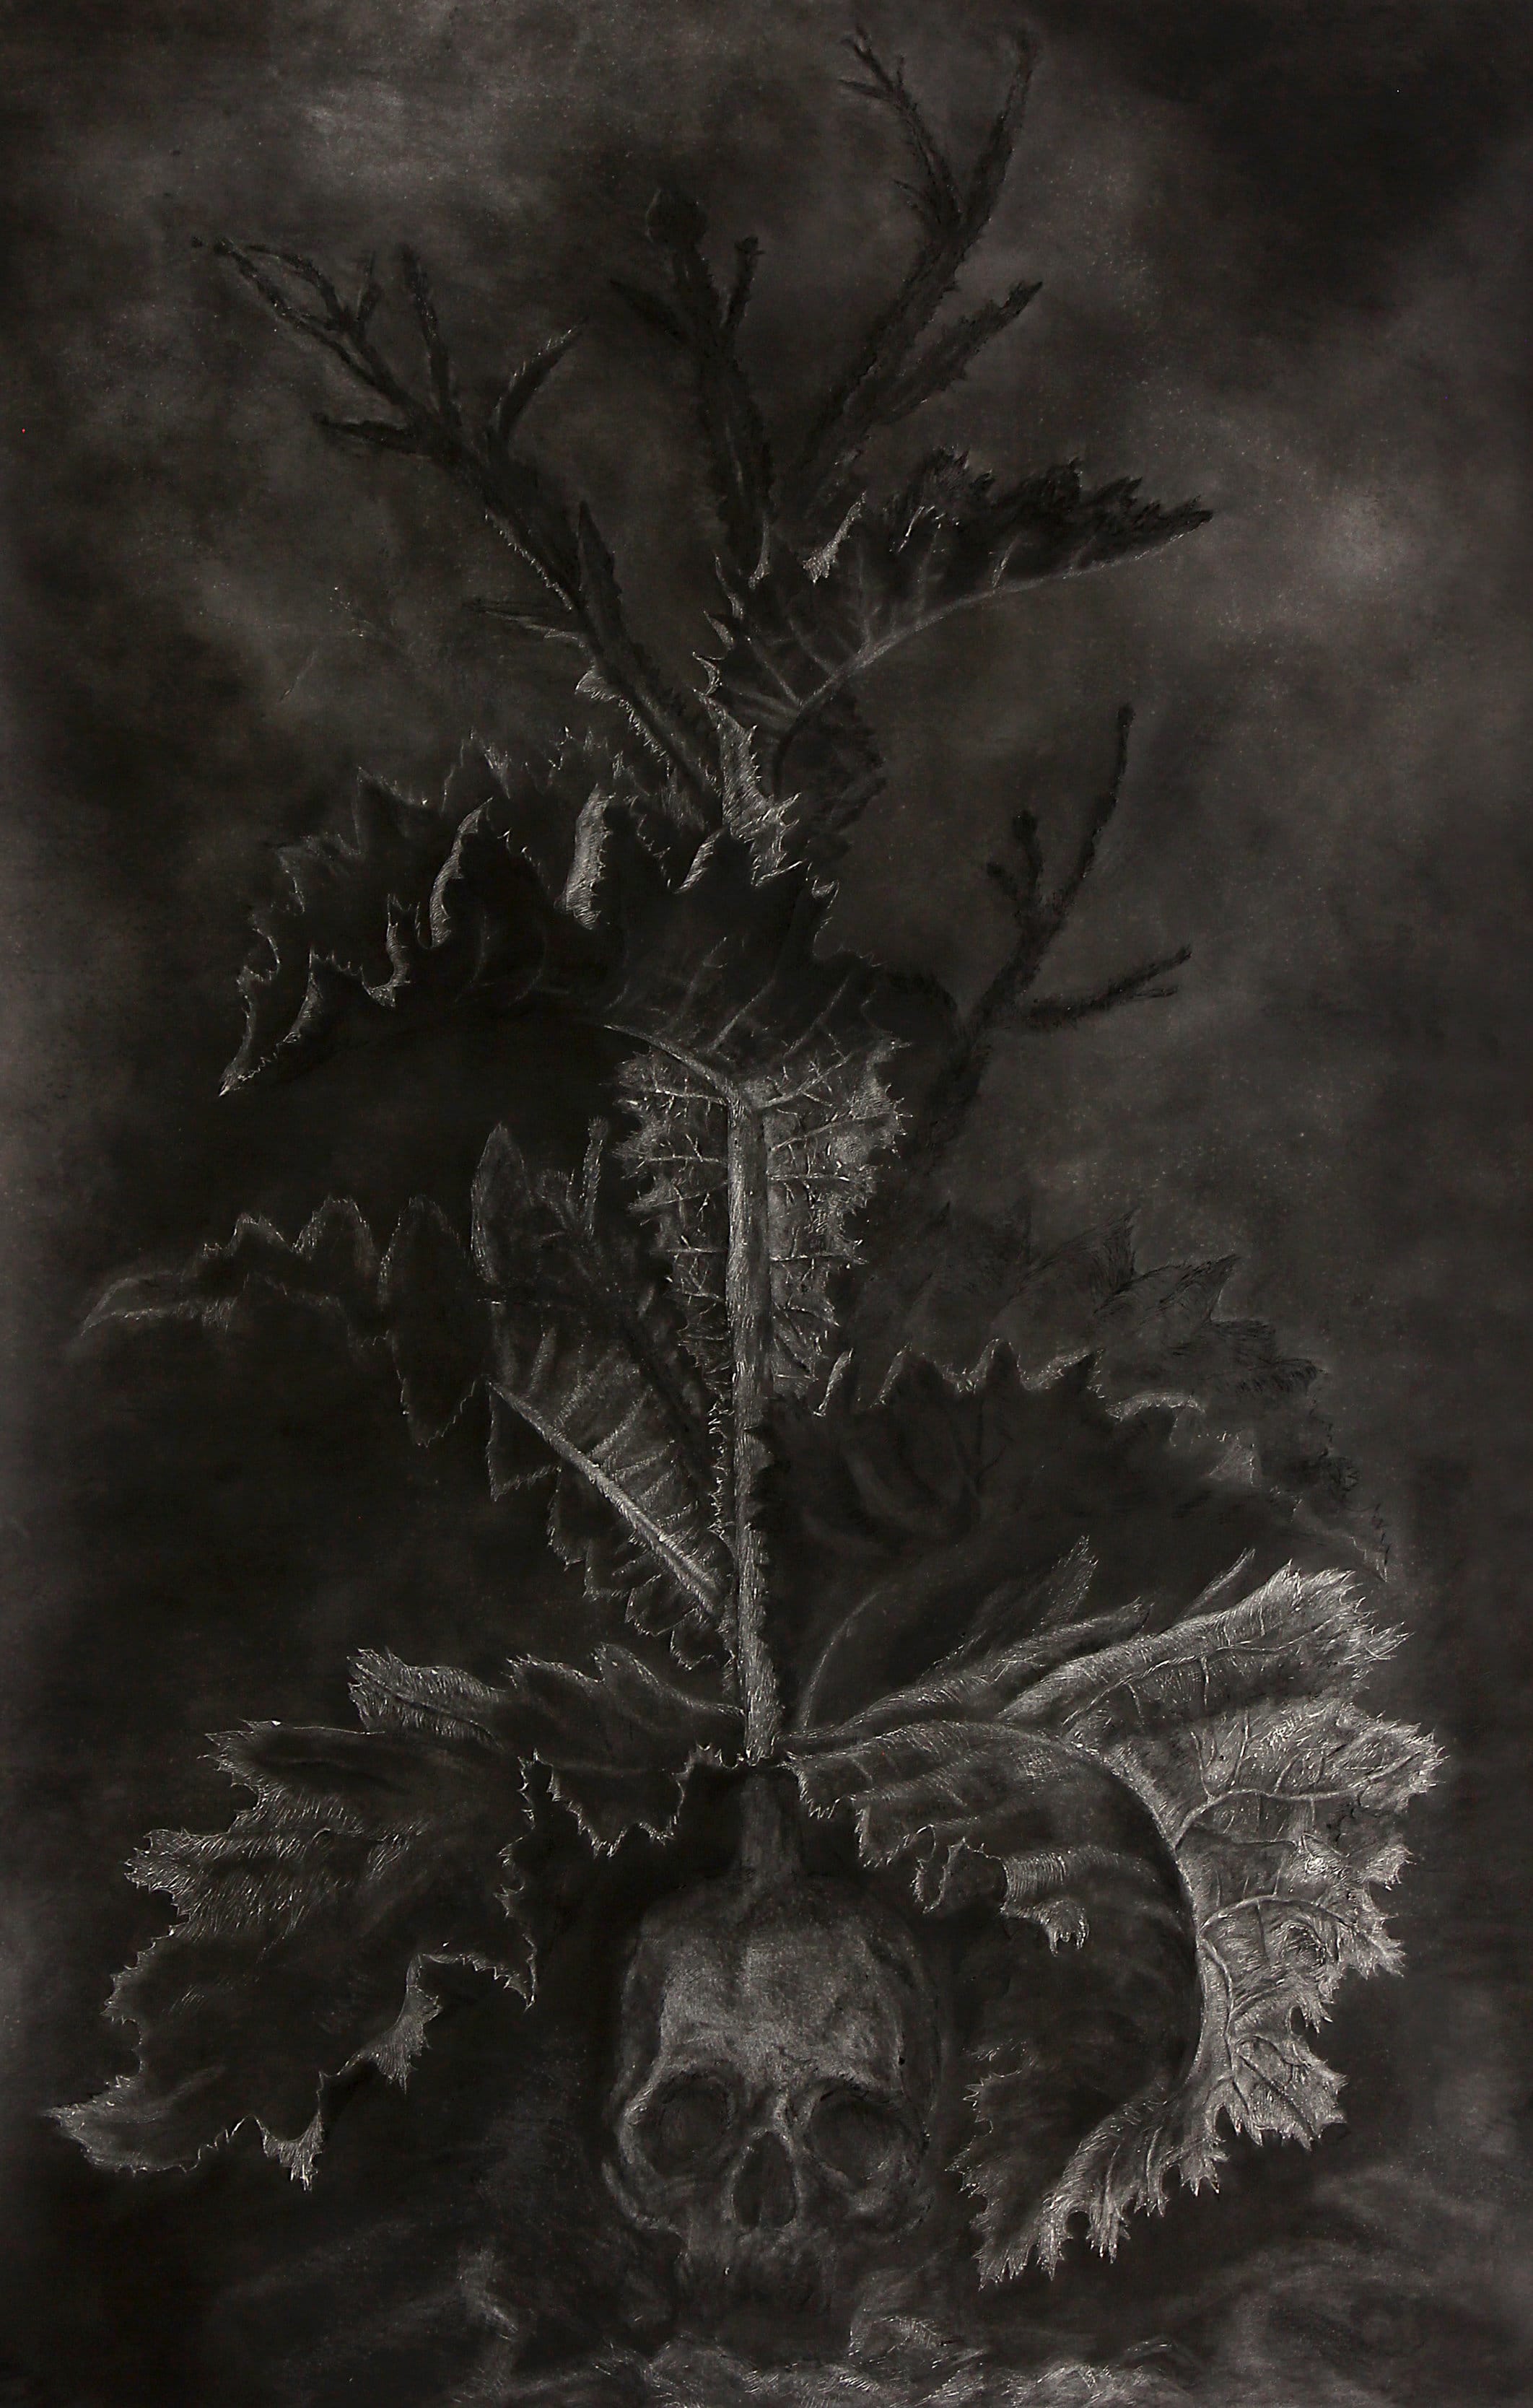 דרור בו-עמי, ללא כותרת, 170120 ס"מ, פחם על נייר, 2014